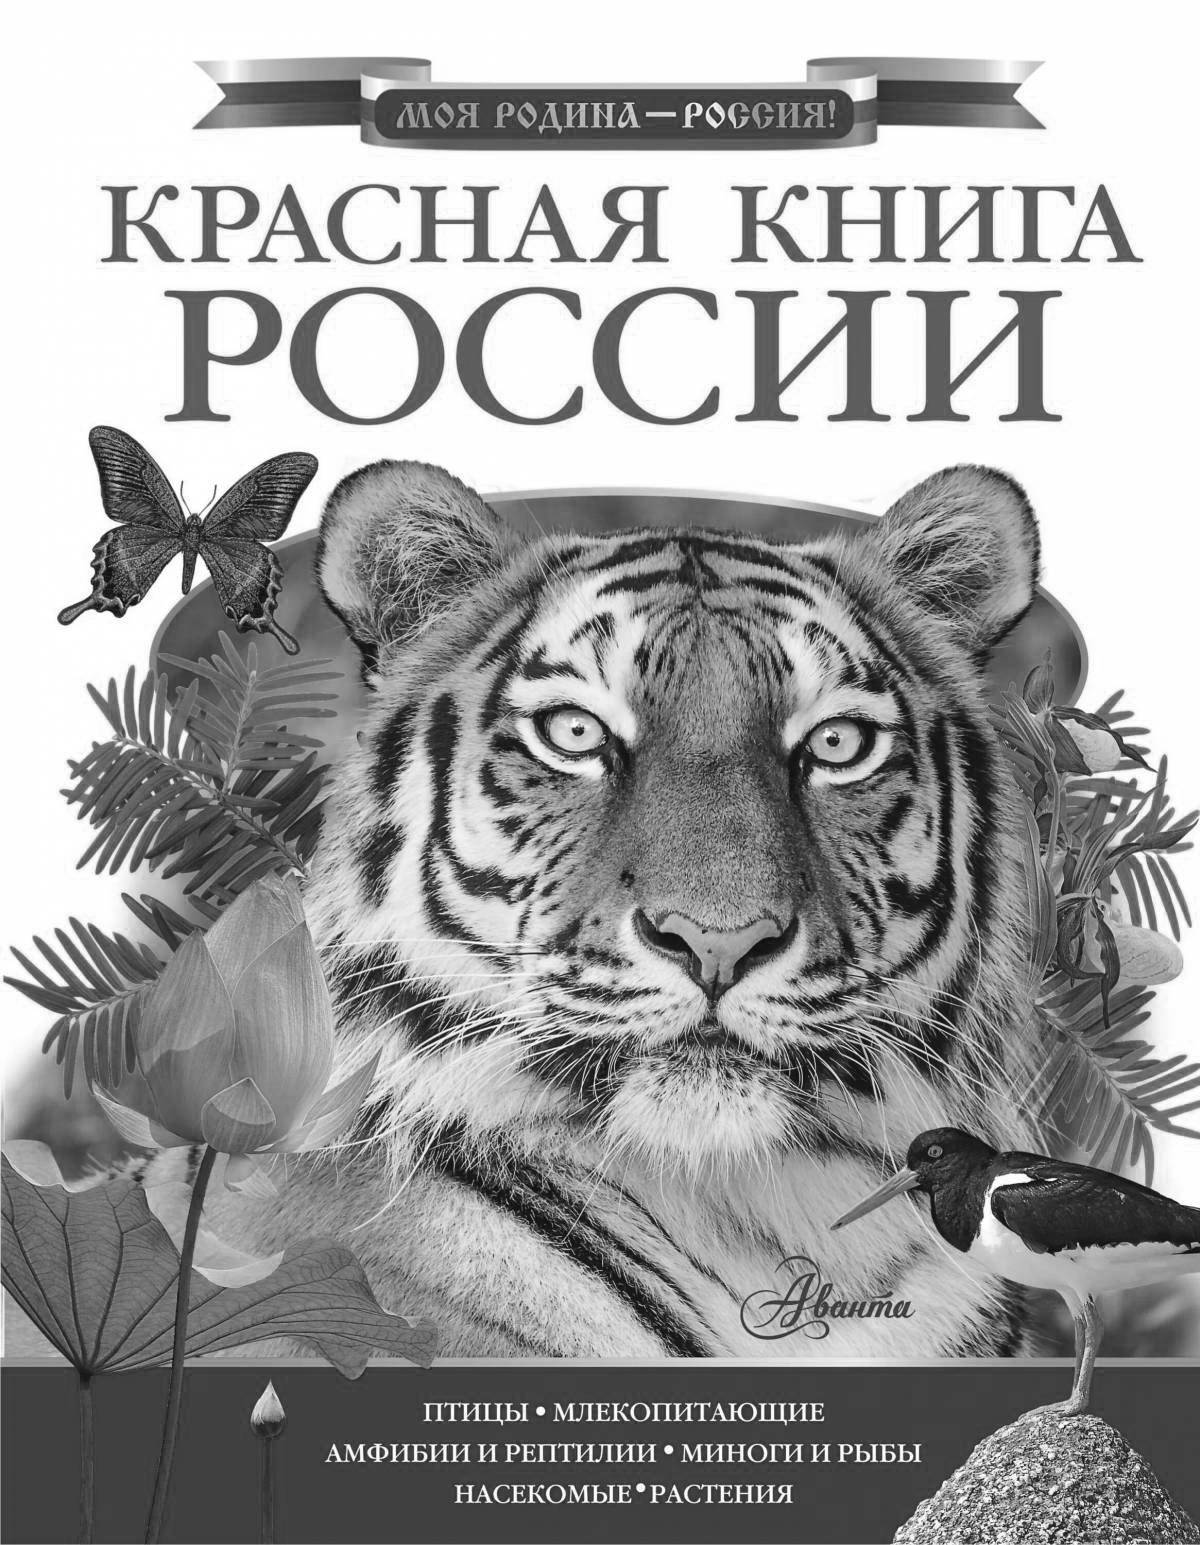 Обложка «ярко-красная книга россии»